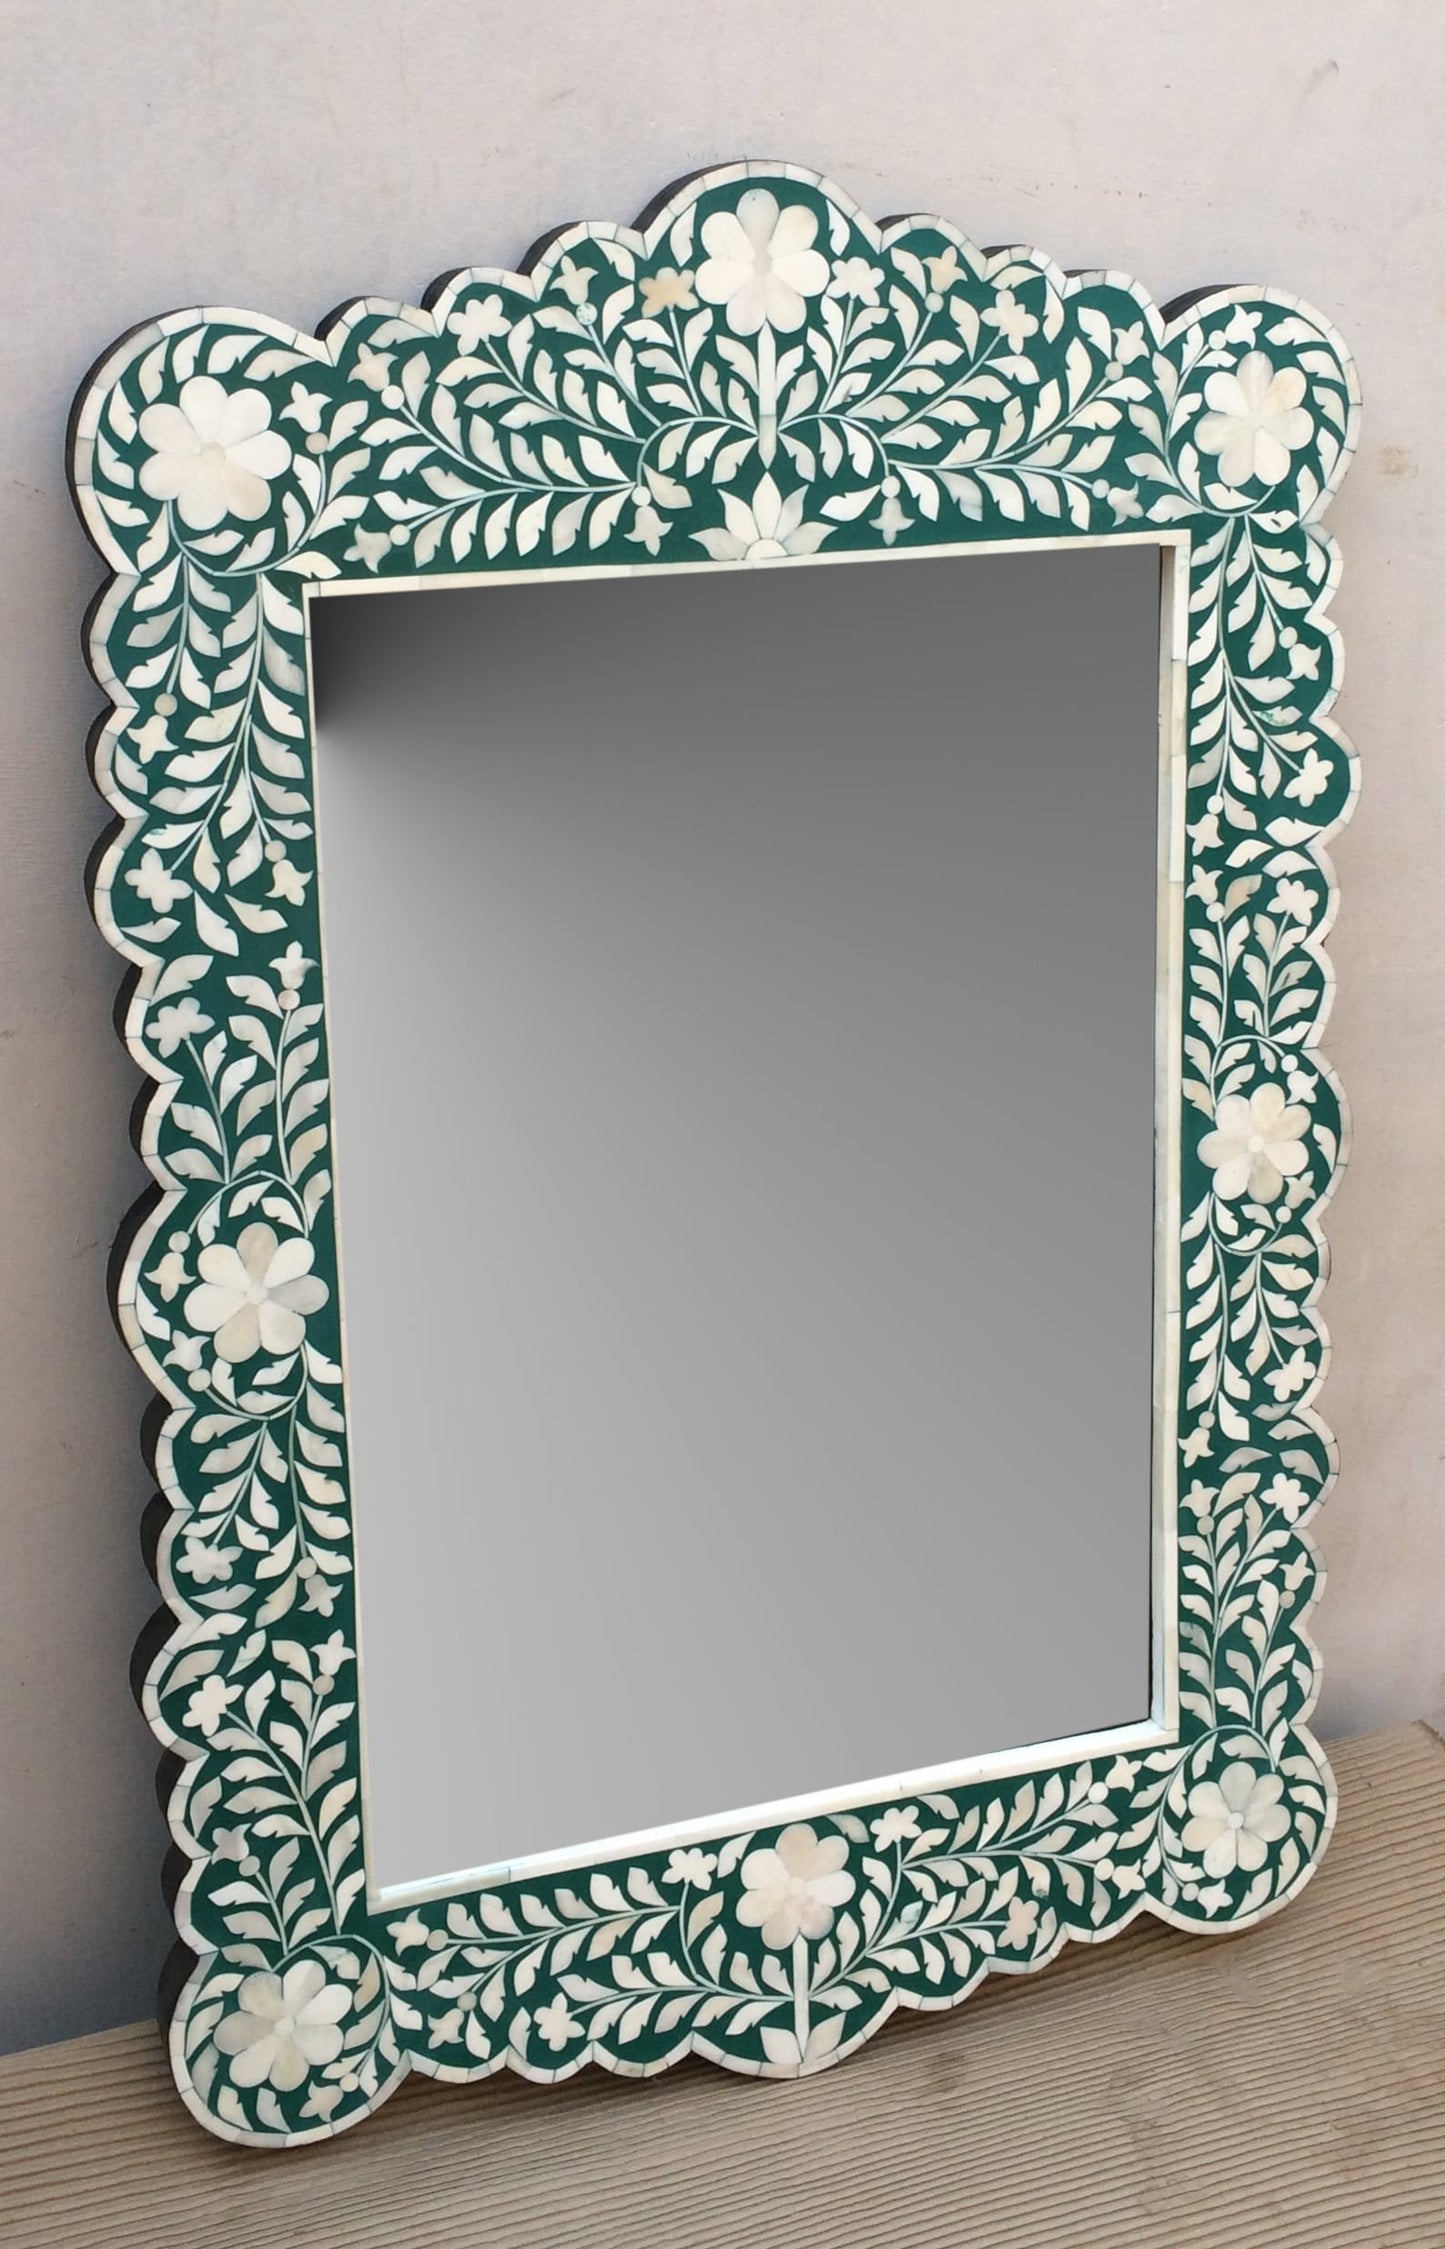 Handmade Bone Inlay Wooden Modern Floral Pattern Mirror Frame Furniture